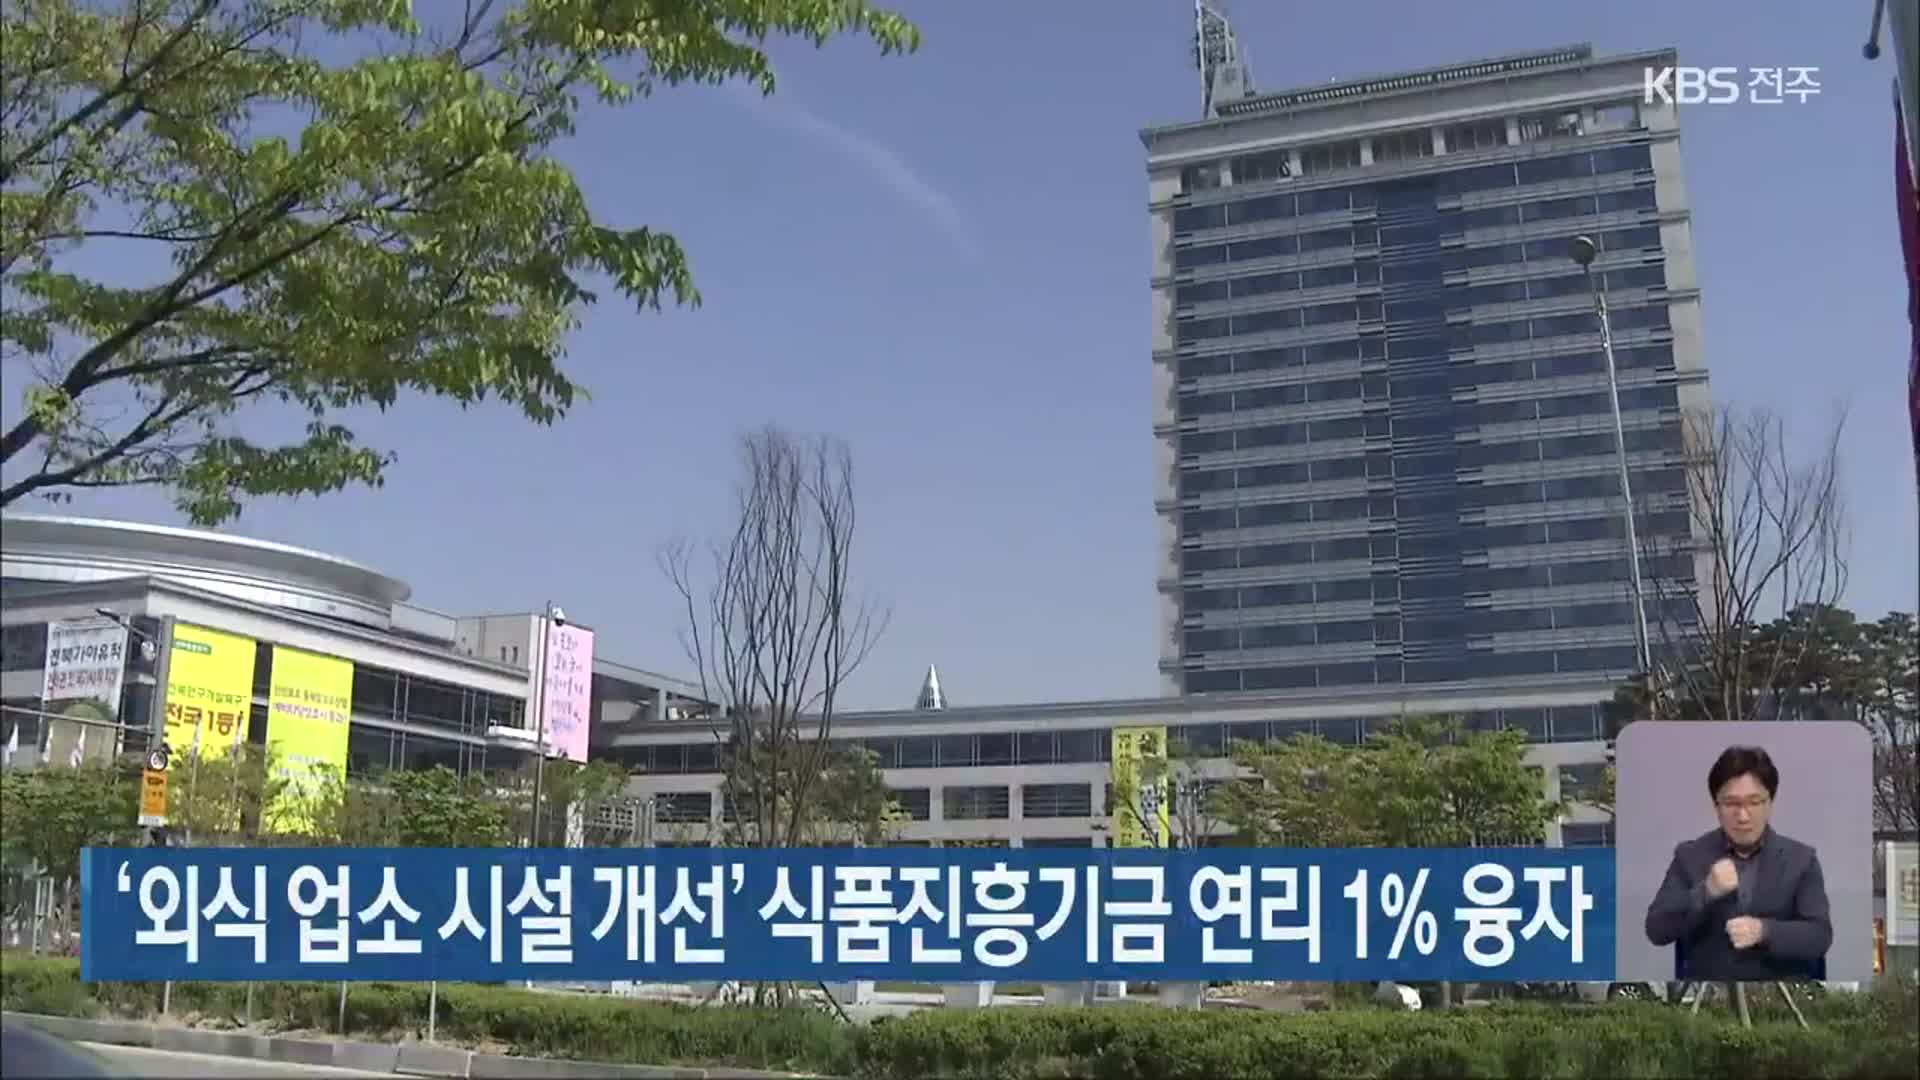 ‘외식 업소 시설 개선’ 식품진흥기금 연리 1% 융자